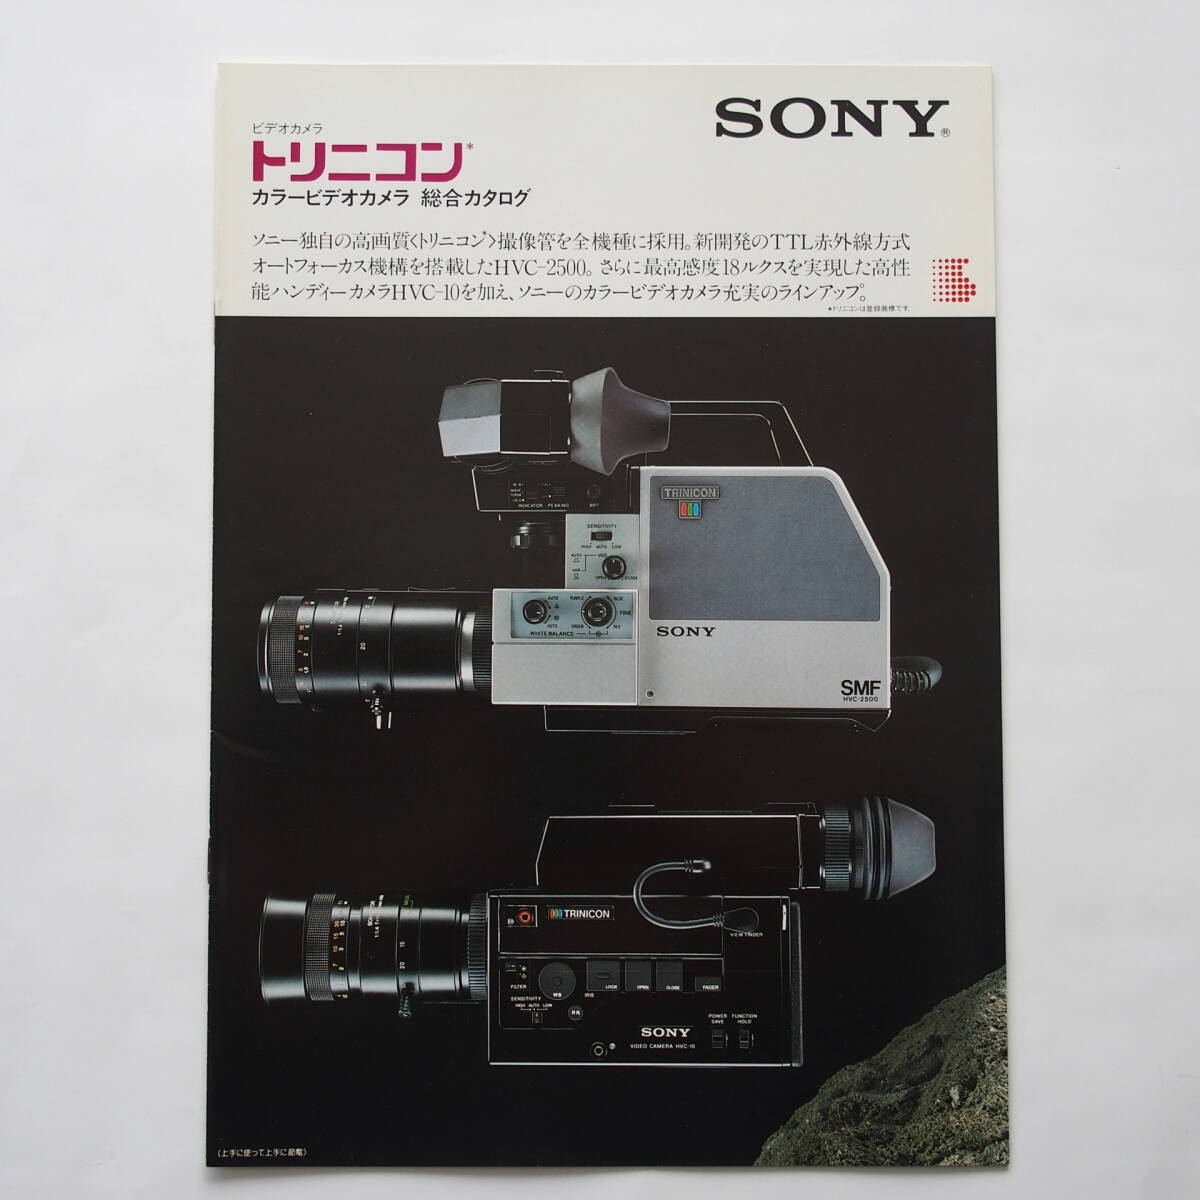 【カタログ2部セット】「SONY トリニコン カラービデオカメラ 総合カタログ」1983年3月 / 「SONY トリニコン HVC-10 カタログ」1983年3月_画像2